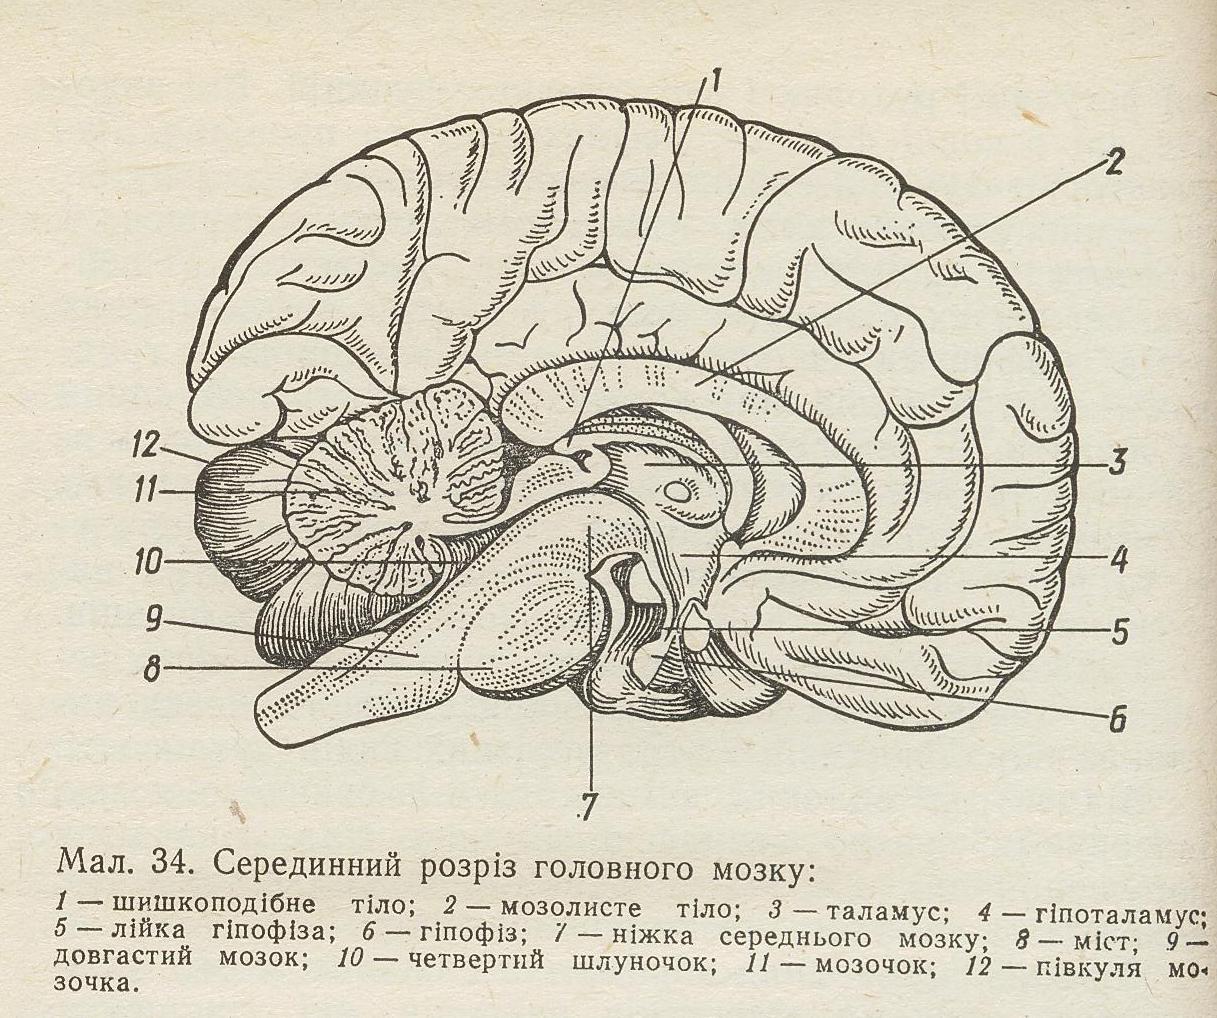 Латинское название мозга. Сагиттальный разрез головного мозга человека. Срединный Сагиттальный срез головного мозга. Рис головной мозг Сагиттальный разрез. Головной мозг Сагиттальный разрез атлас.